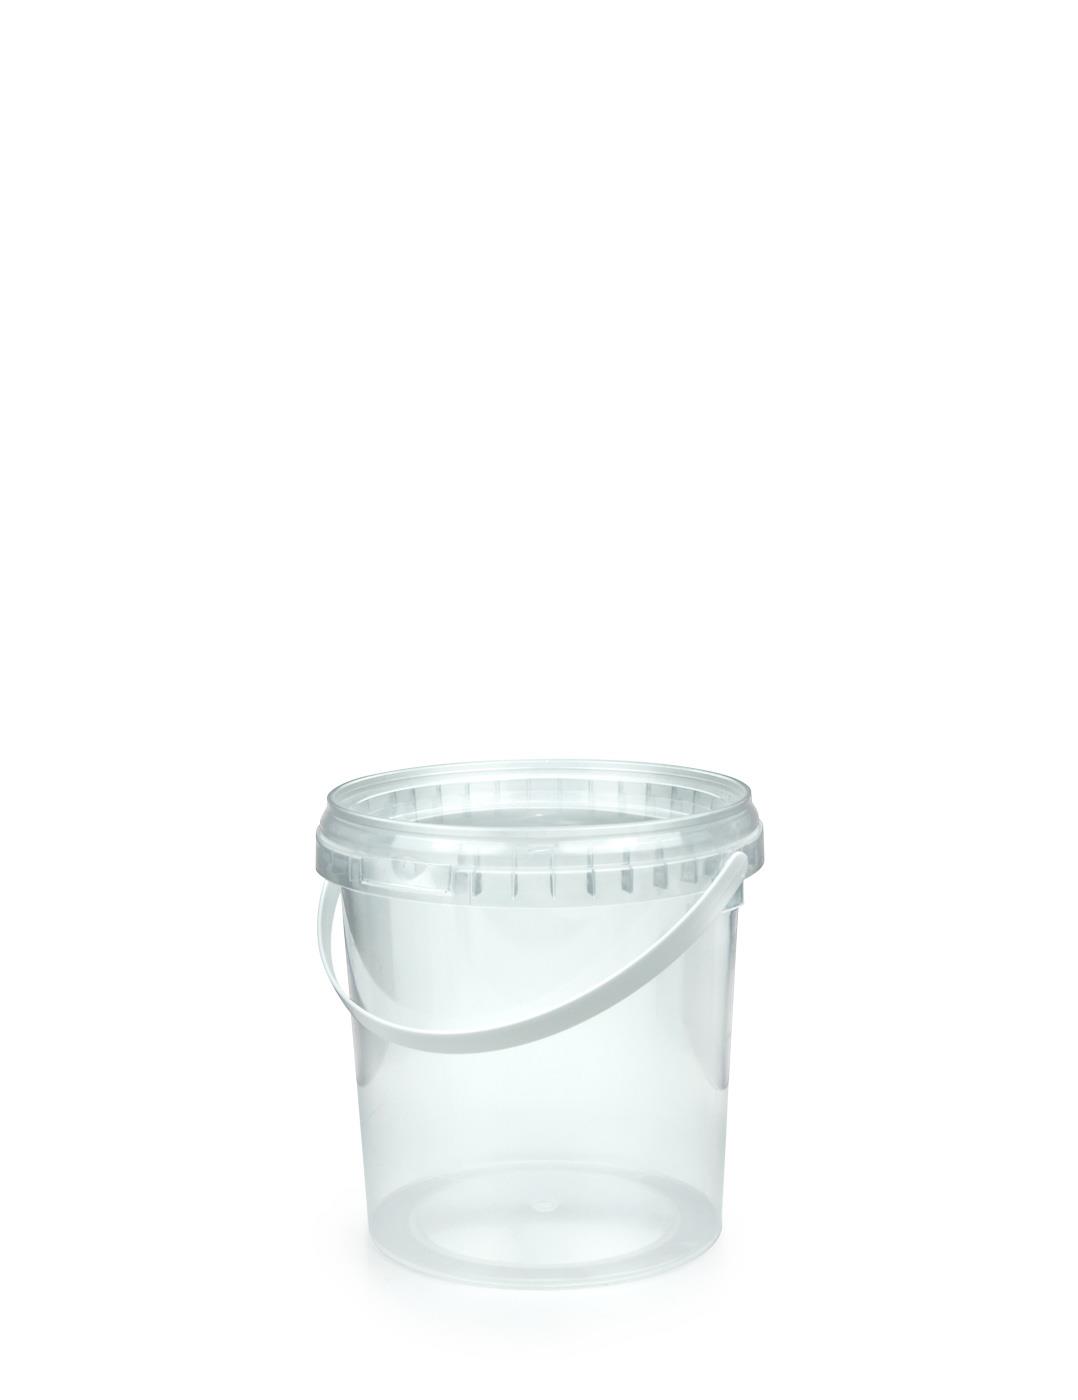 20 l 20 litri Ltr l bianco secchio di plastica con filo con manico e coperchio per contenitore per alimenti Home Brew Garden DIY plastica White 